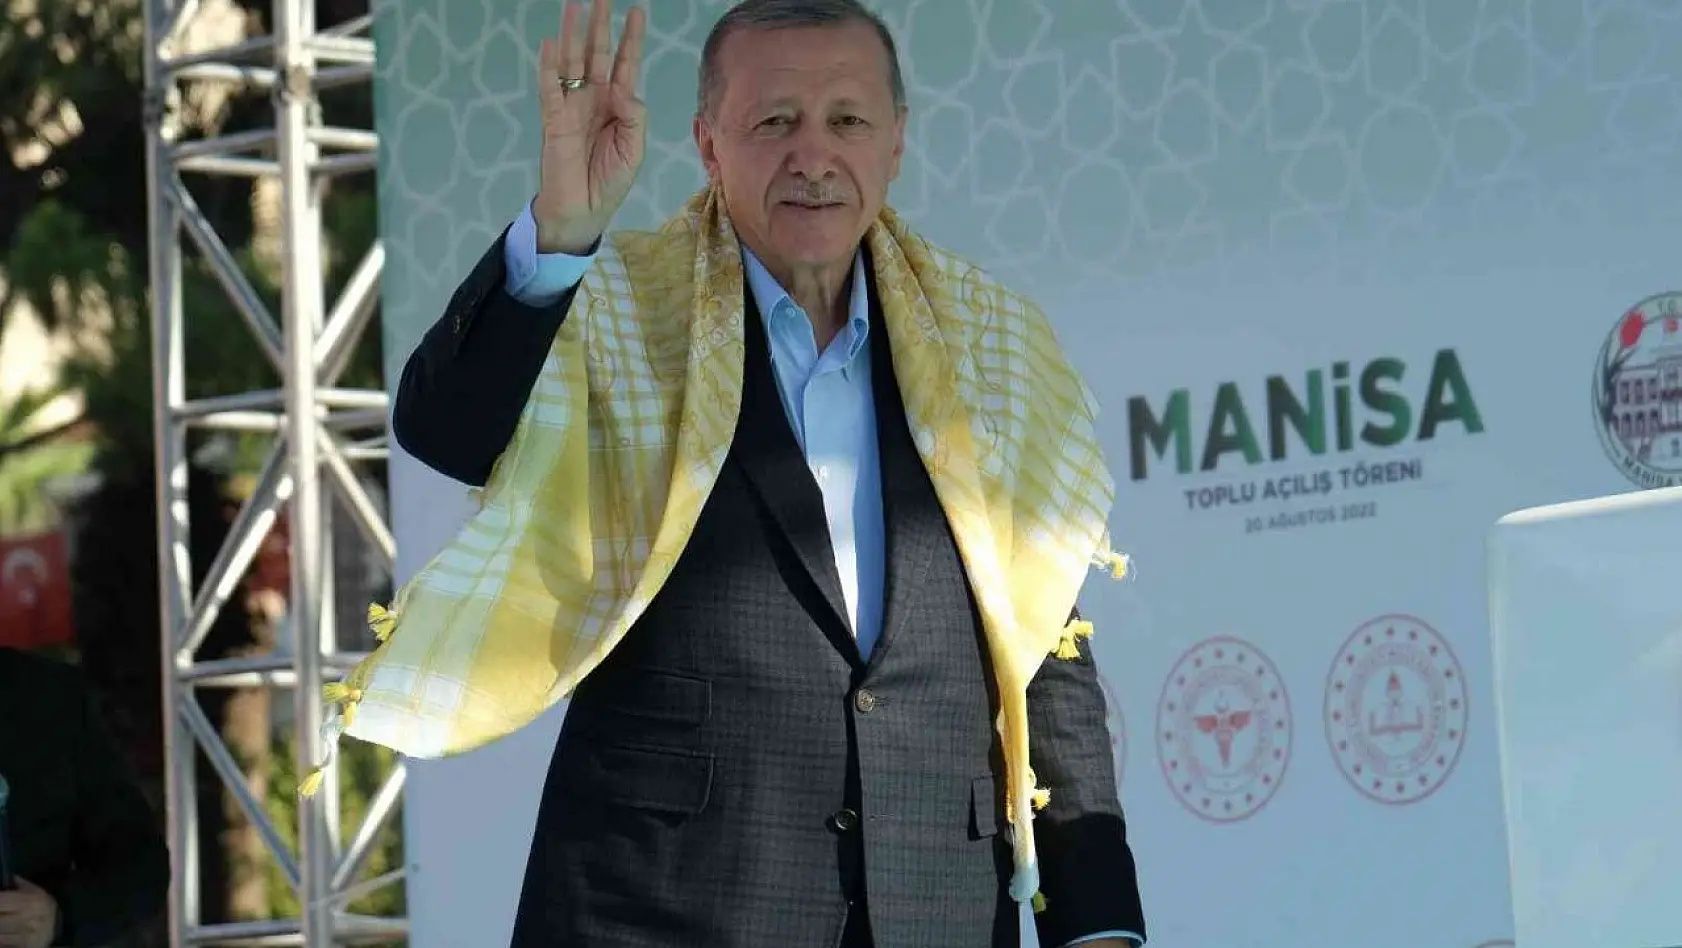 Manisa'da topu açılış töreninde konuşan Cumhurbaşkanı Erdoğan, 'Bölgemizin en önemli gelir kaynaklarından olan Sultaniye çekirdeksiz kuru üzümün alım fiyatını 27 lira olarak belirledik.' dedi.